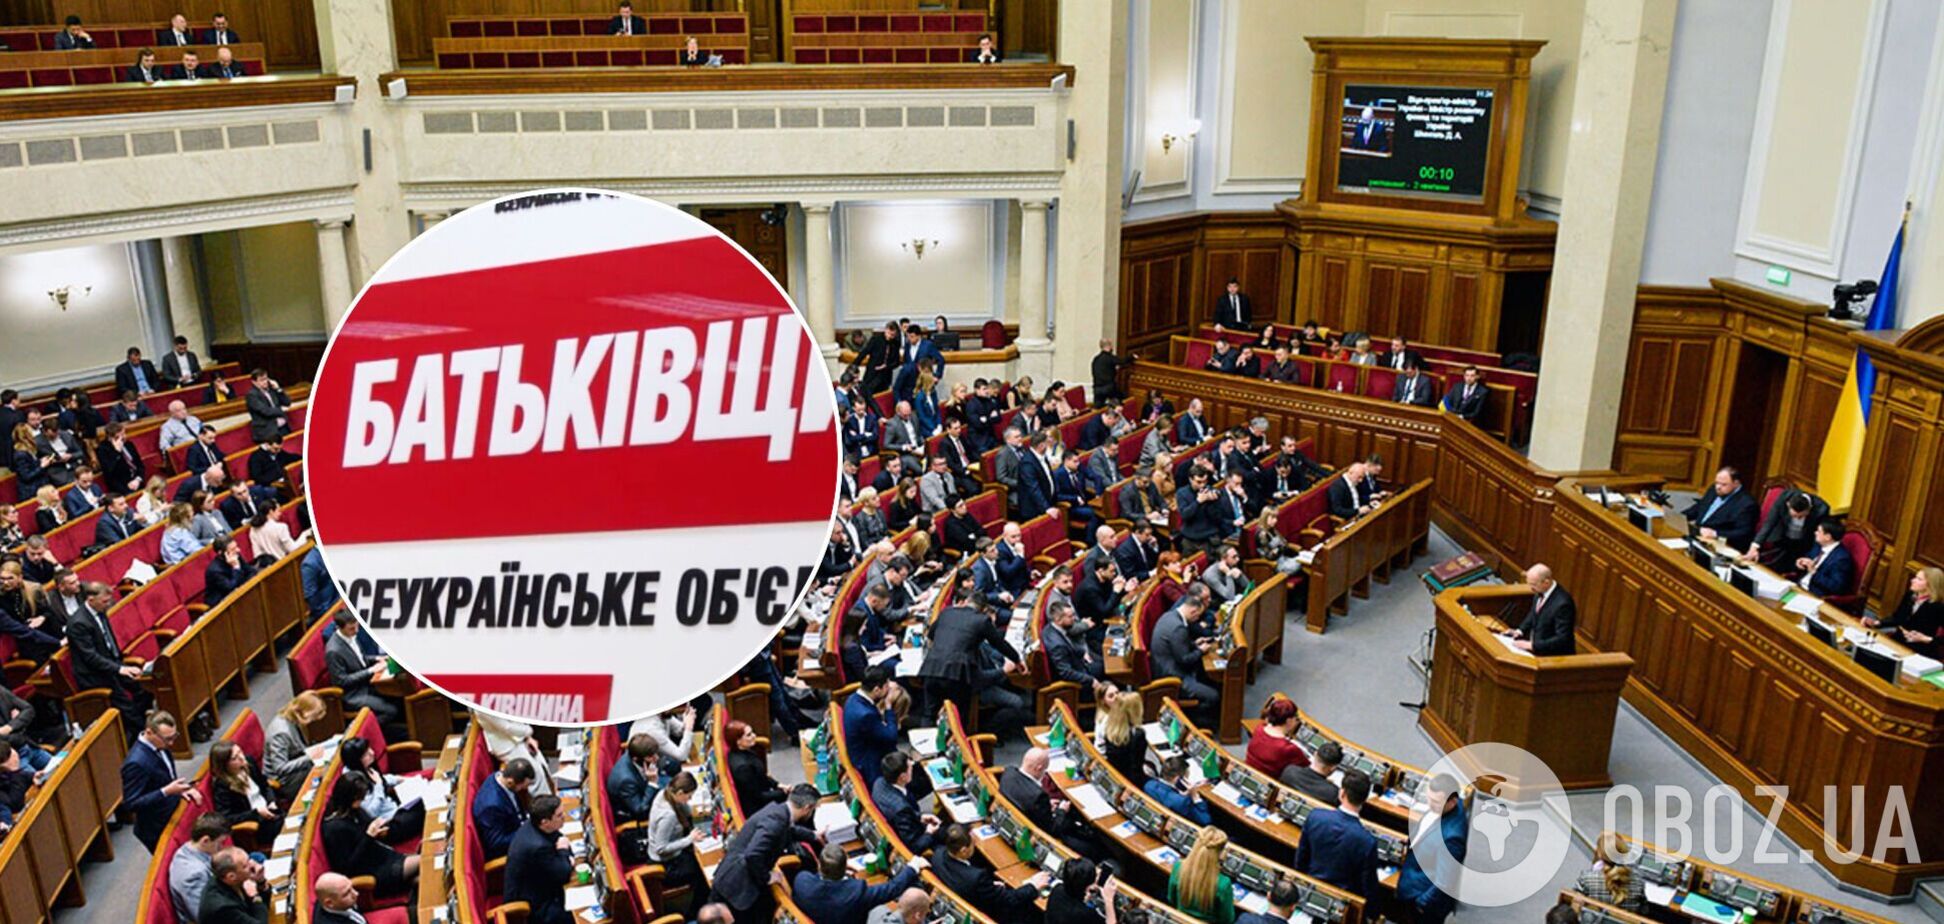 'Батьківщина' руками Власенко продвигает законопроекты, которые вредят интересам государства